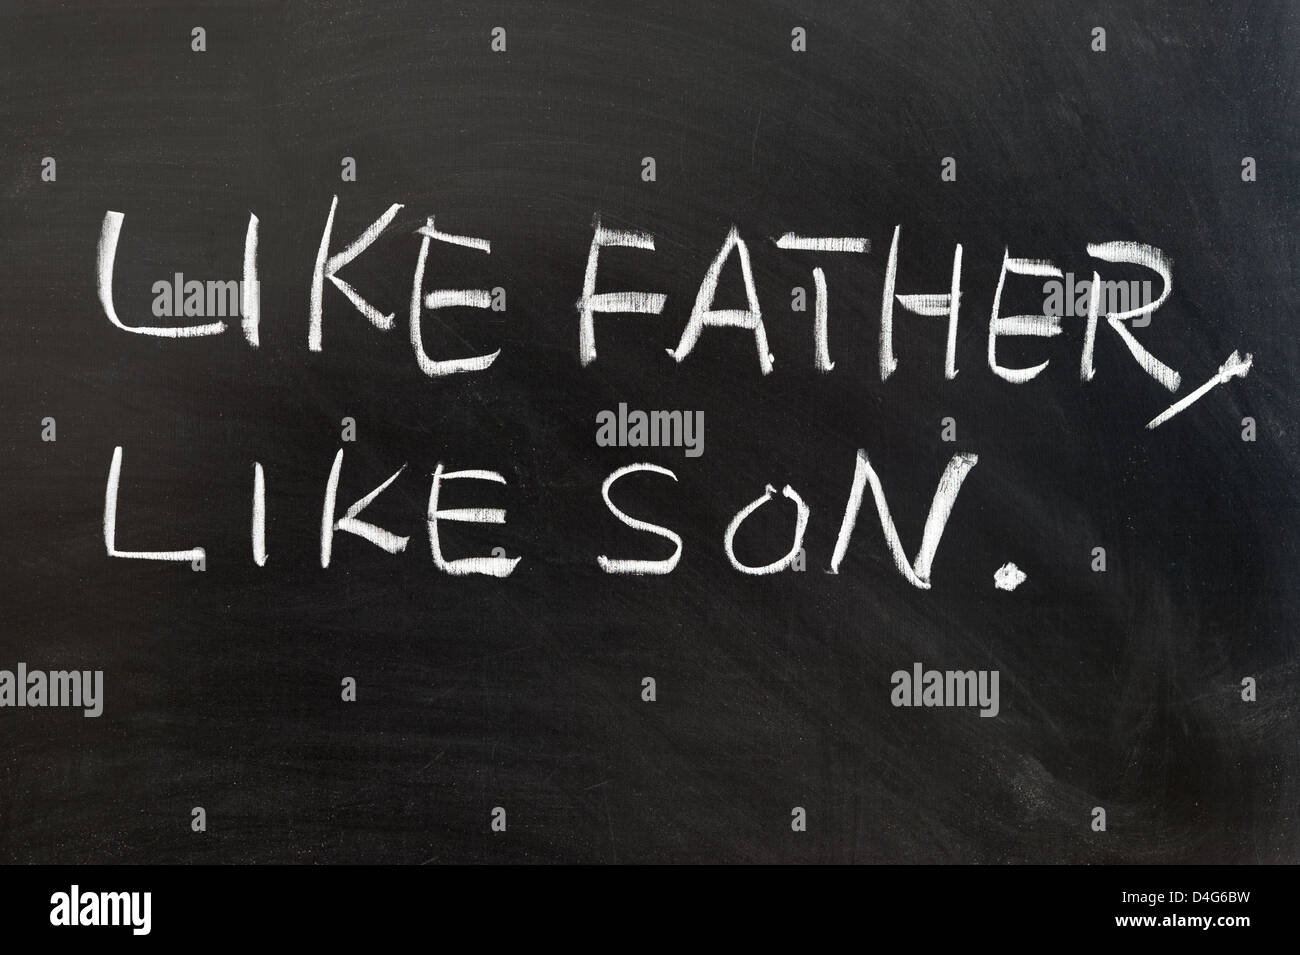 Aussage des "Like Father, like Son" an die Tafel geschrieben Stockfoto